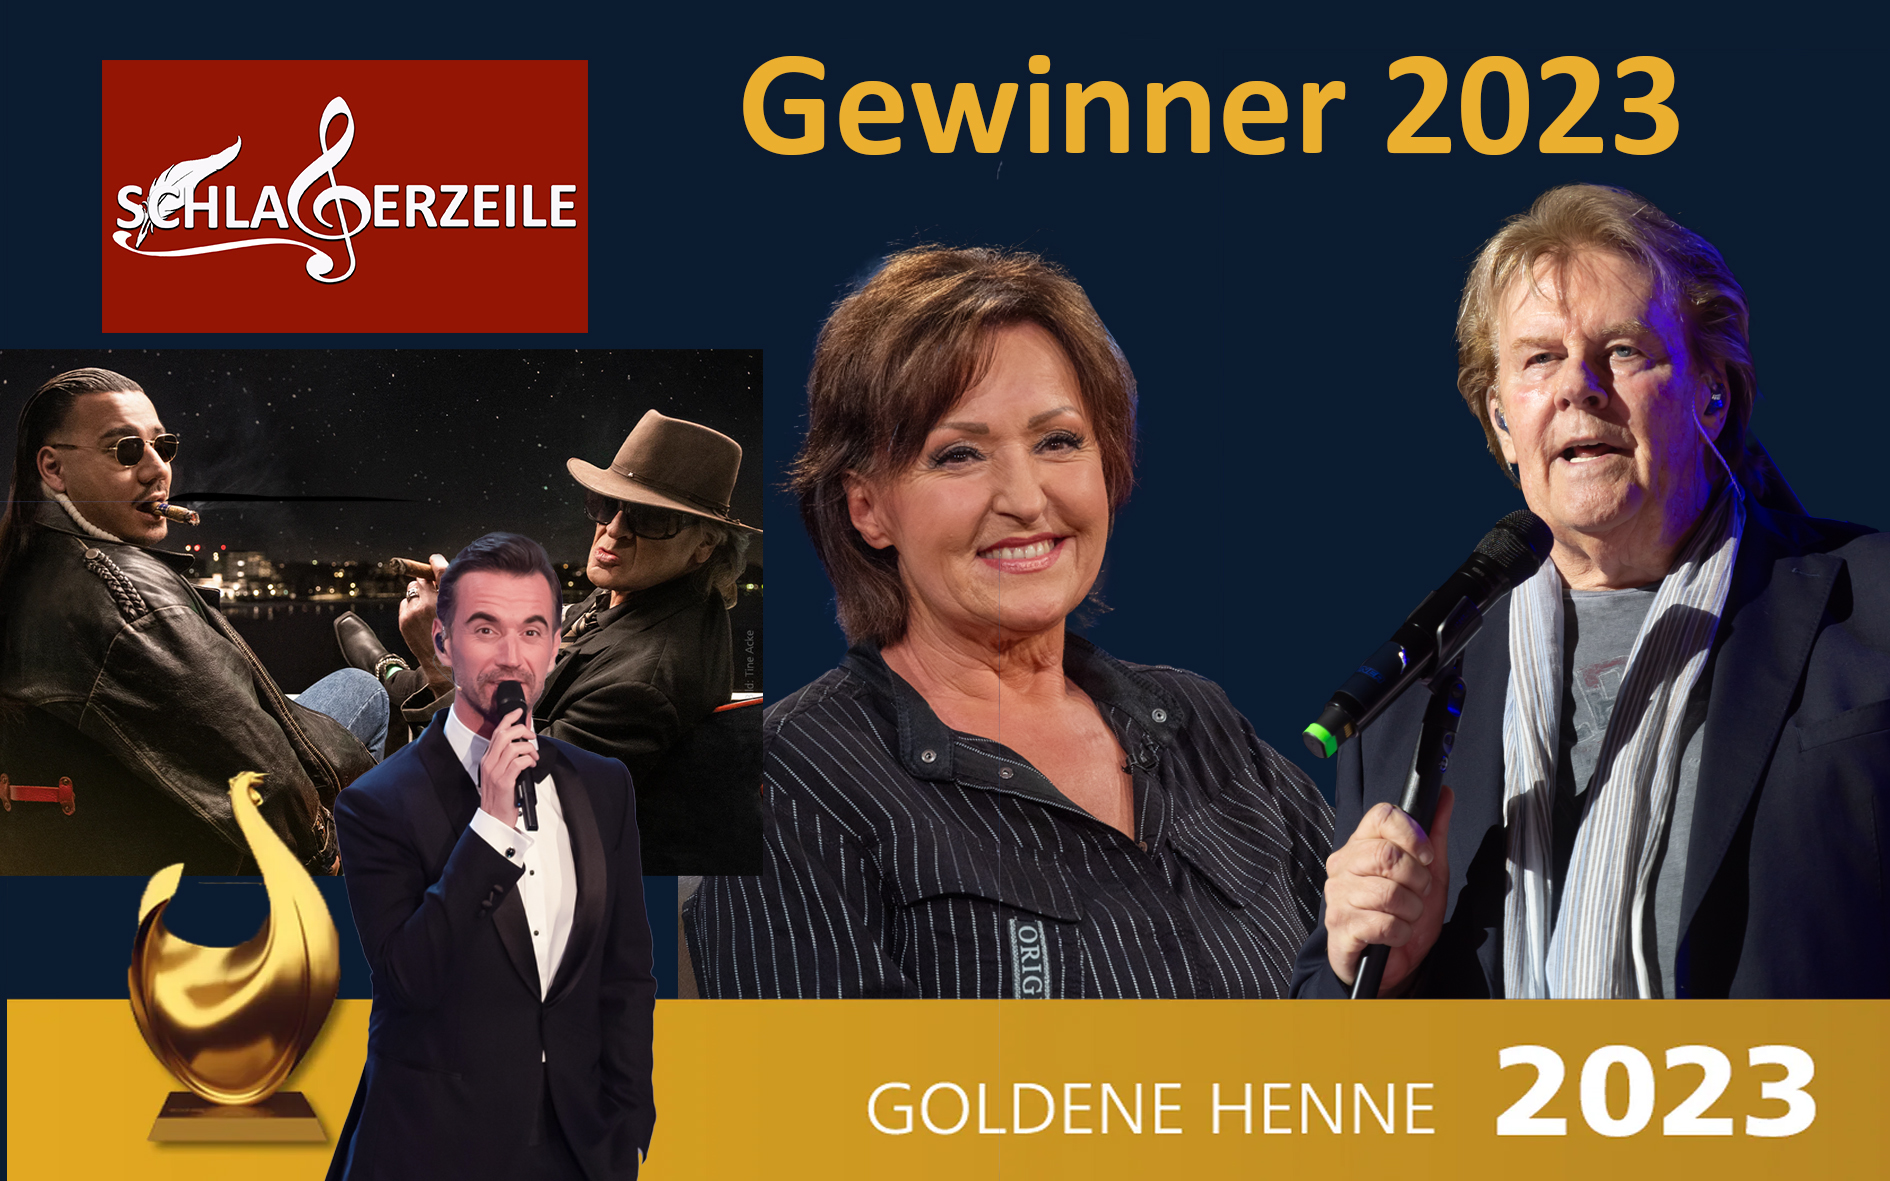 Goldene Henne, Gewinner, Ute Freudenberg, Howard Carpendale, Moderator Florian Silbereisen